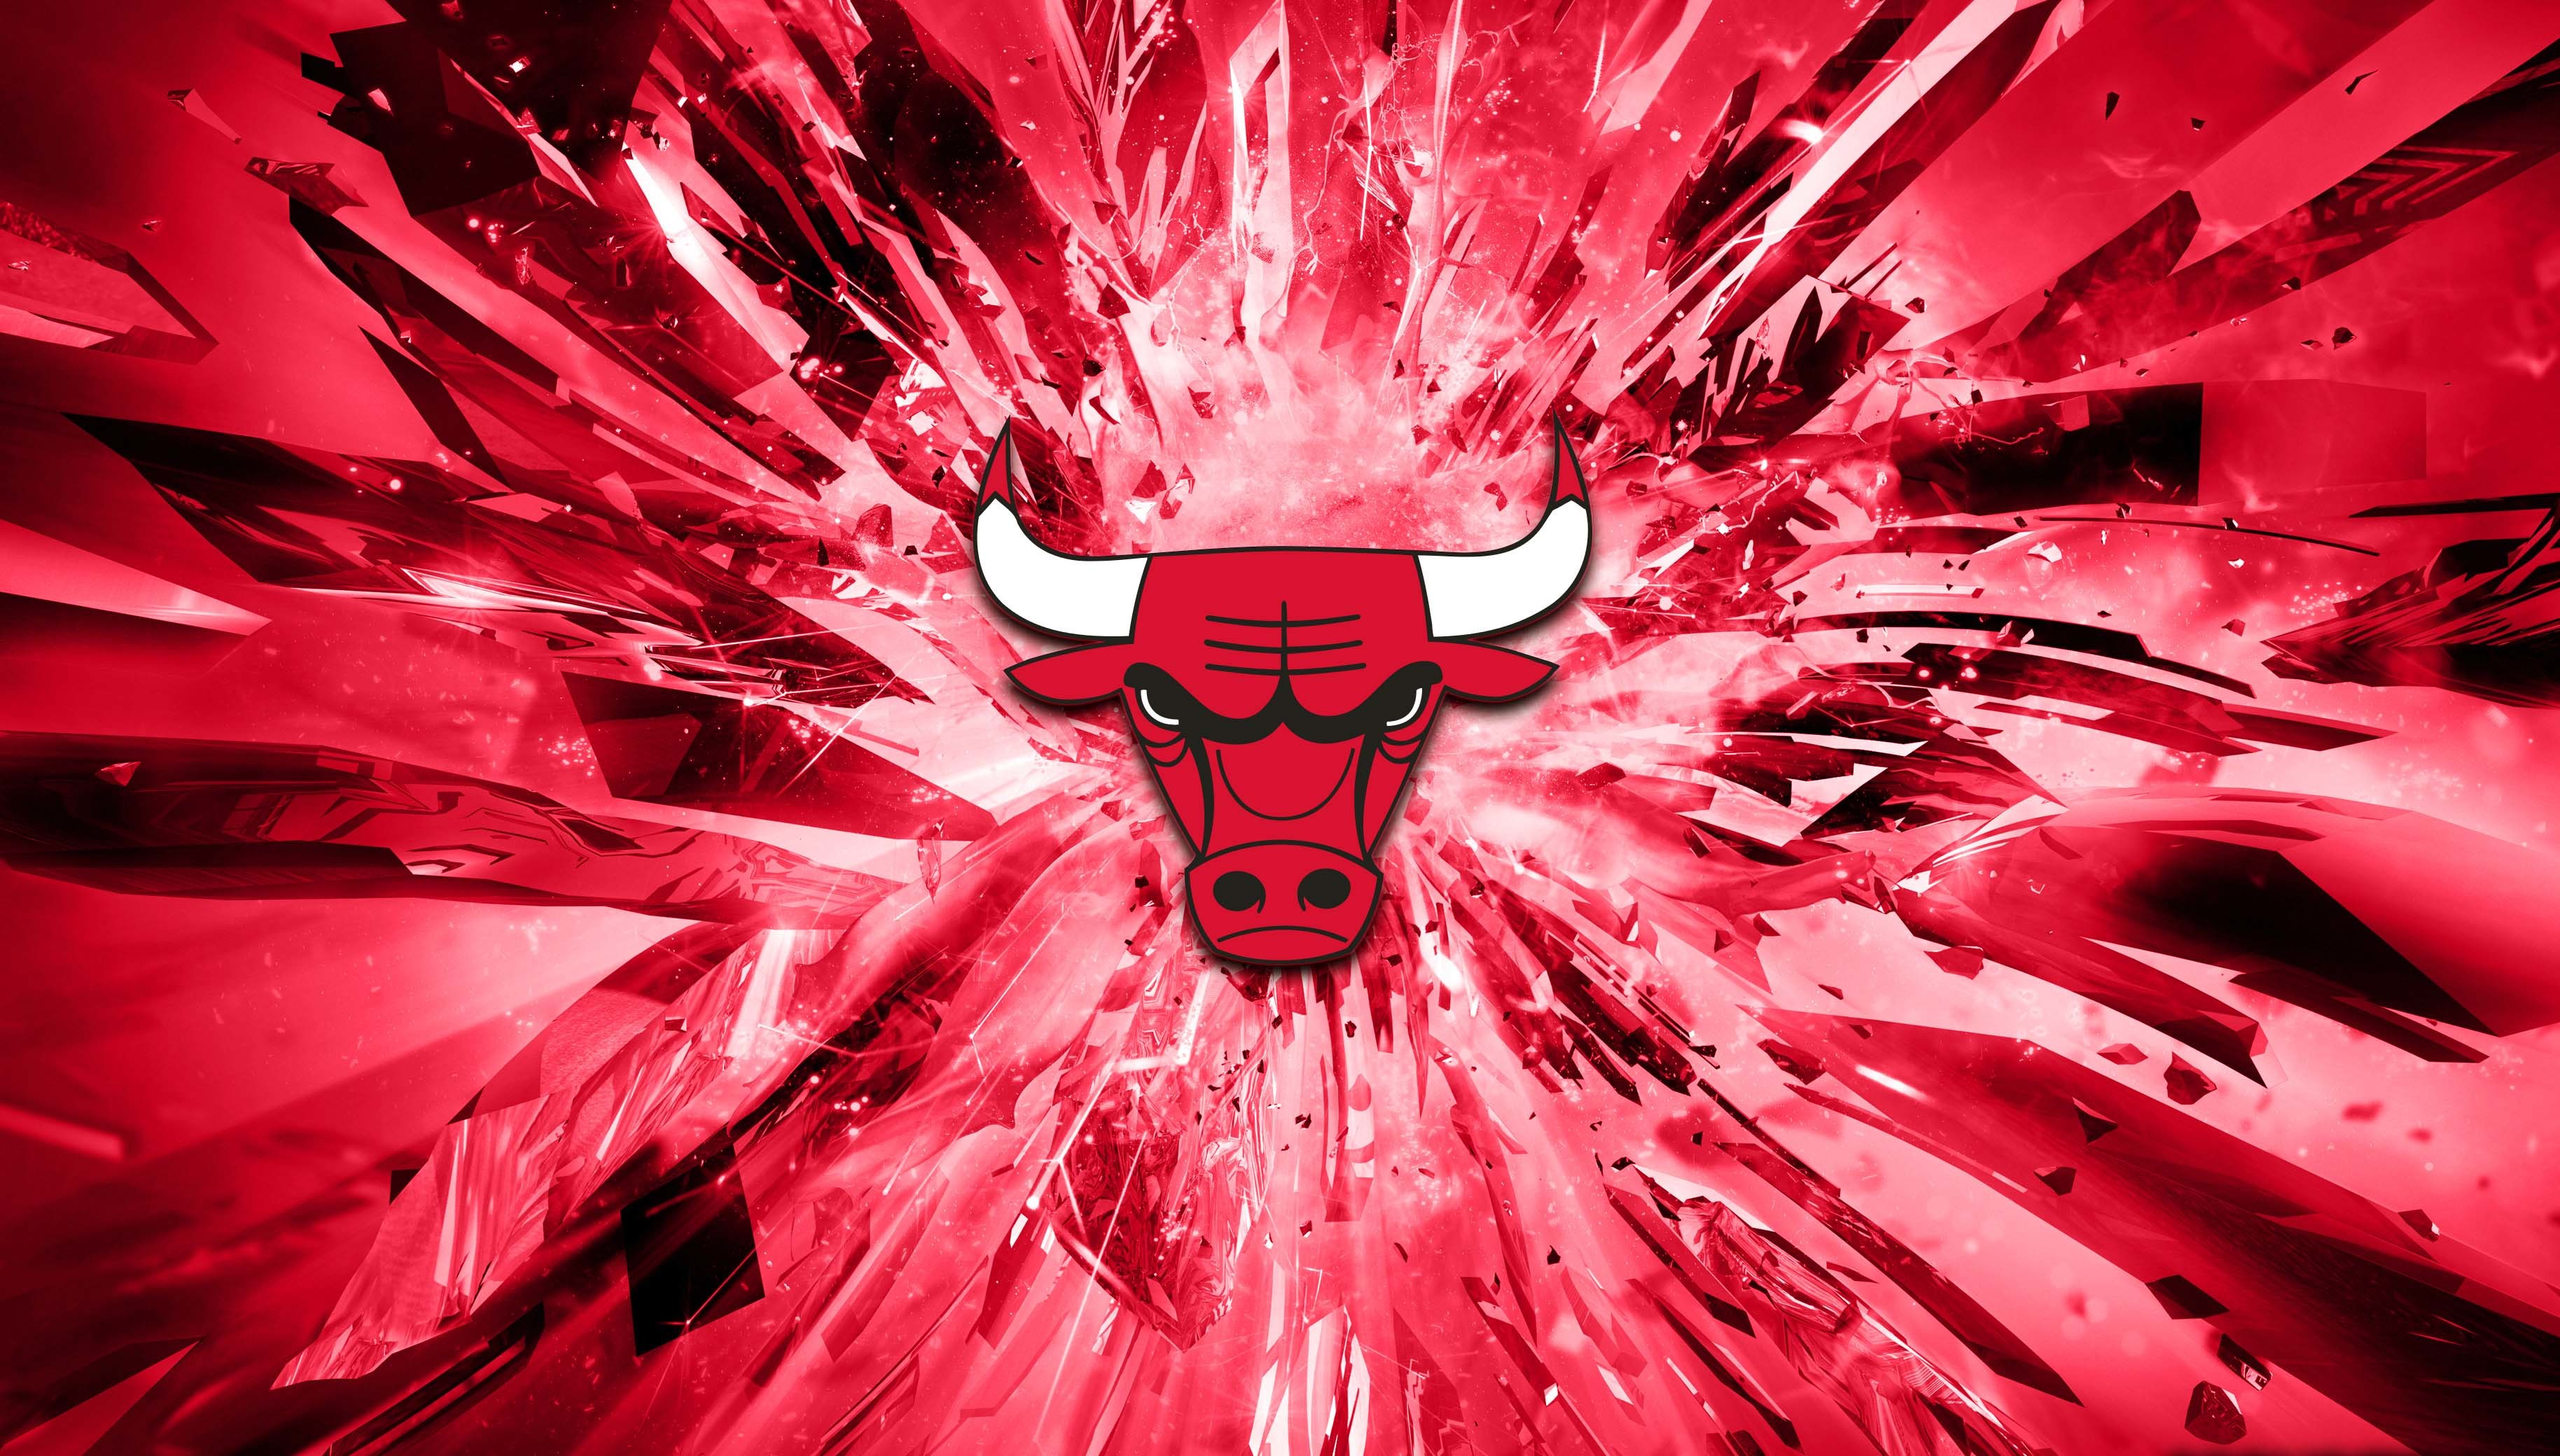 3656x2080 Explore Warriors Wallpaper, Nba Season, and more! Top 11 Chicago Bulls ...